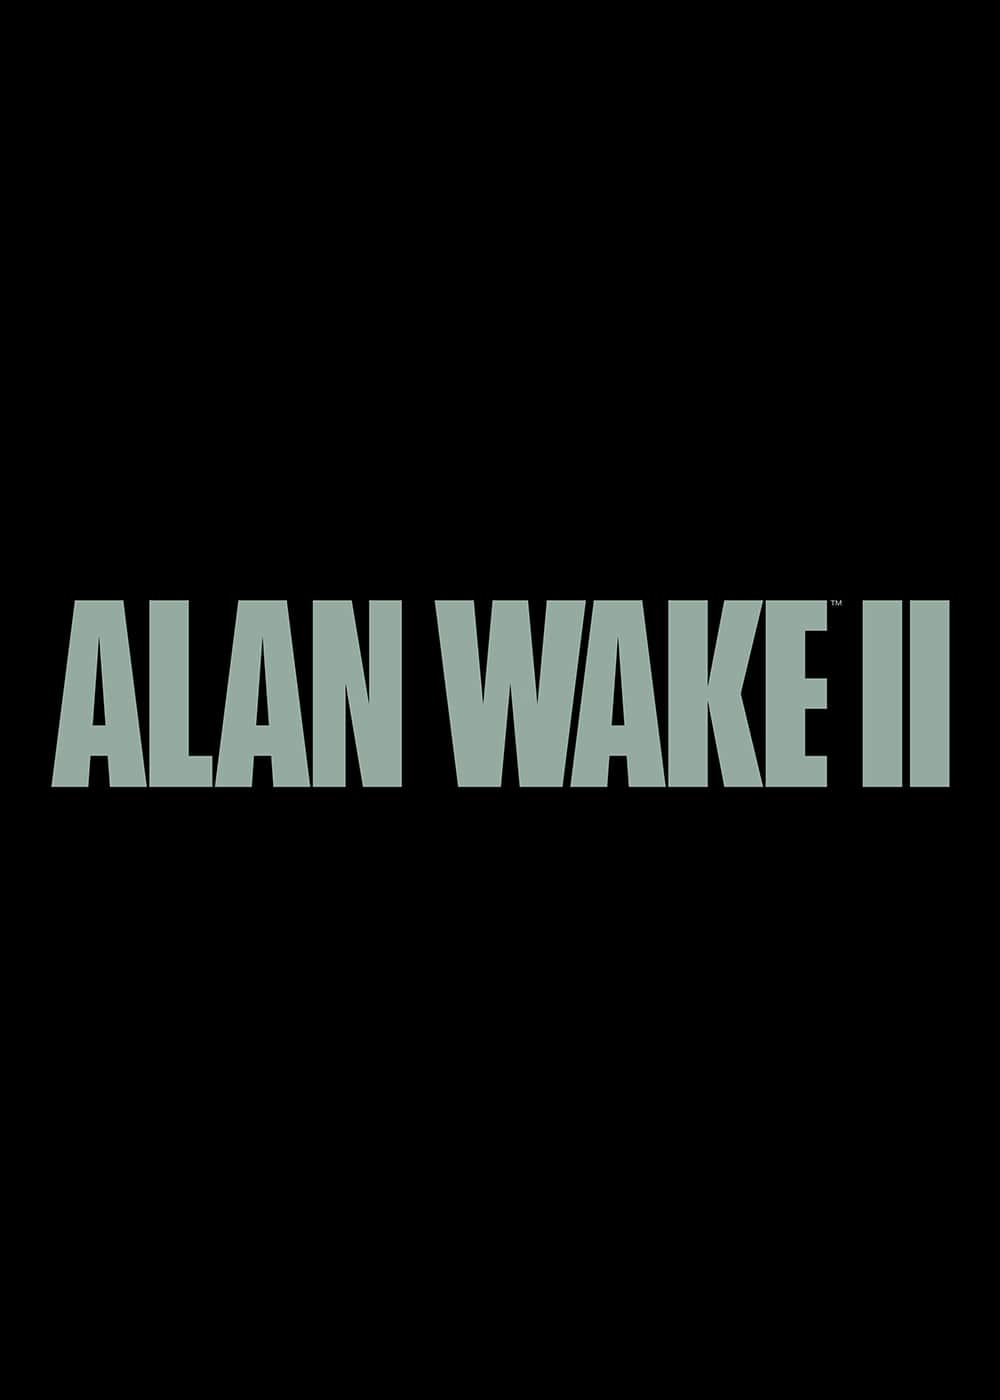 playing-alan-wake-in-2019-chapter-2-taken-youtube